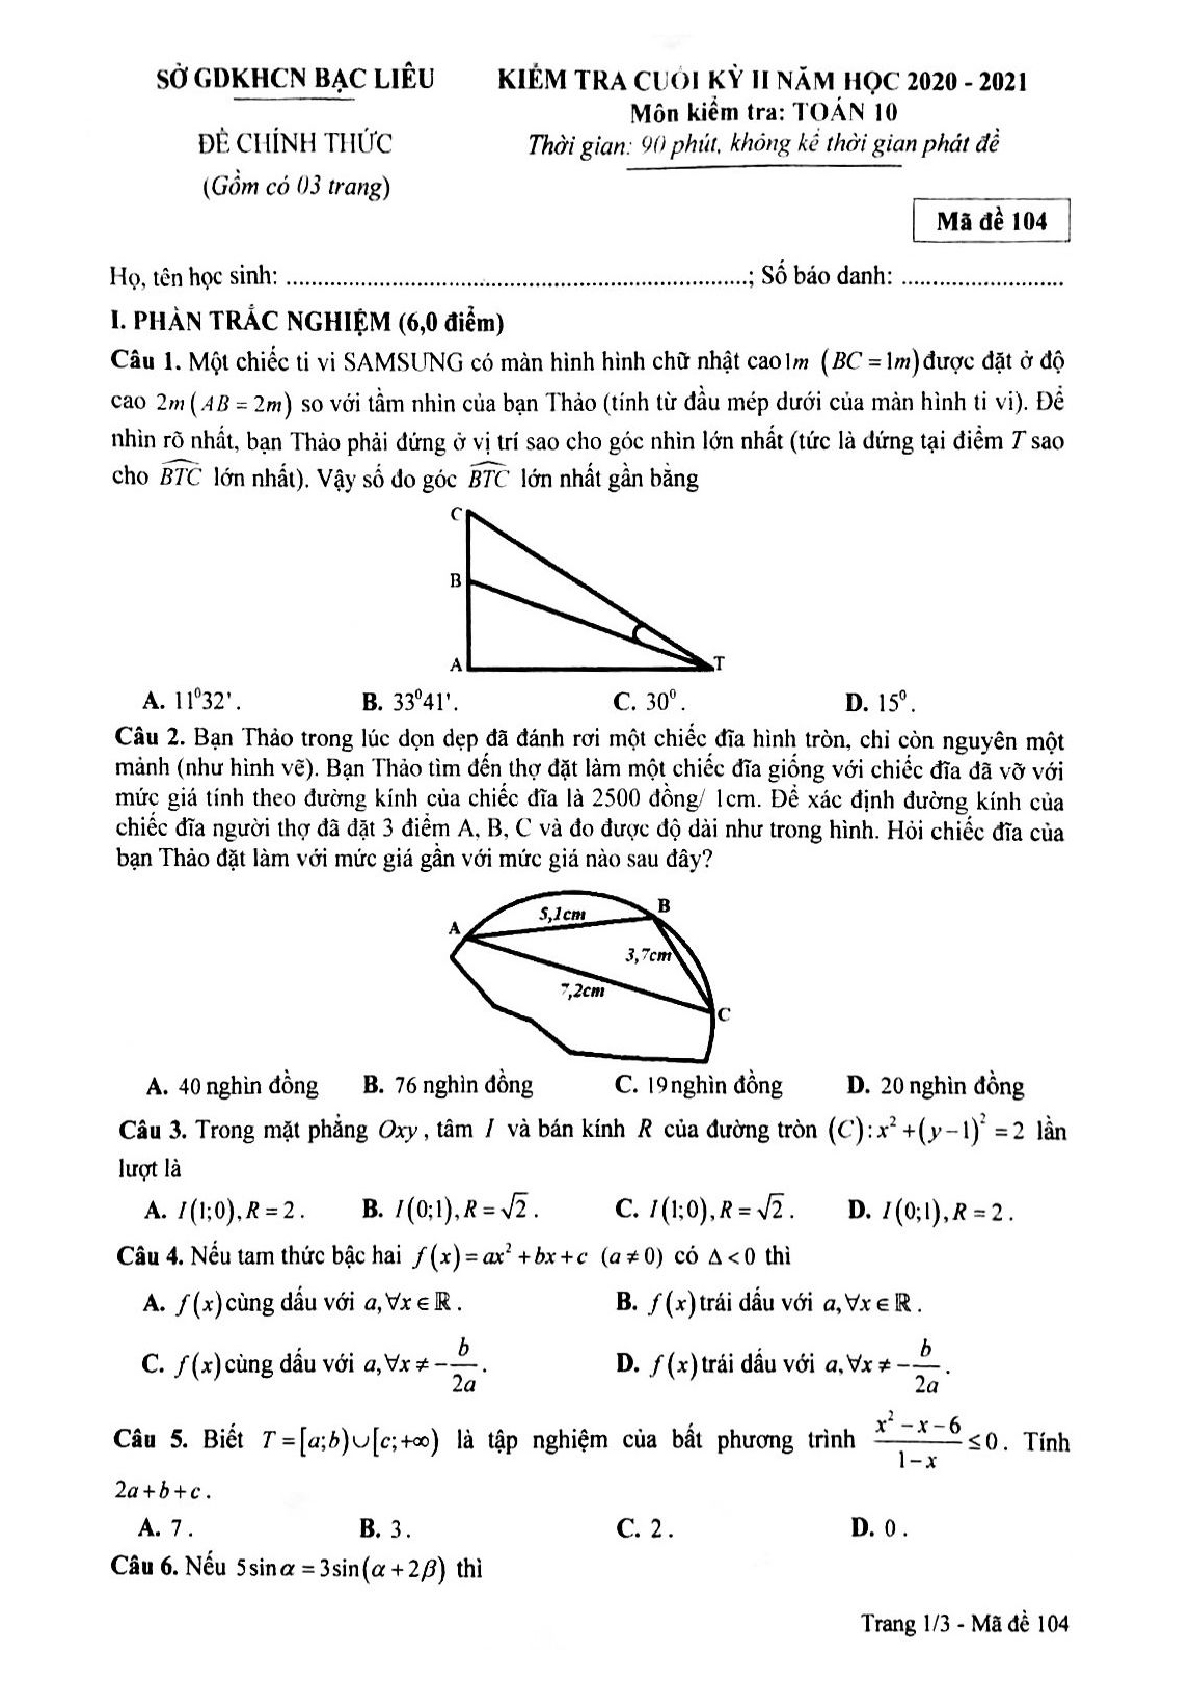 Đề kiểm tra cuối học kì 2 môn toán 10 sở GDKHCN Bạc Liêu năm học 2020-2021 (trang 1)